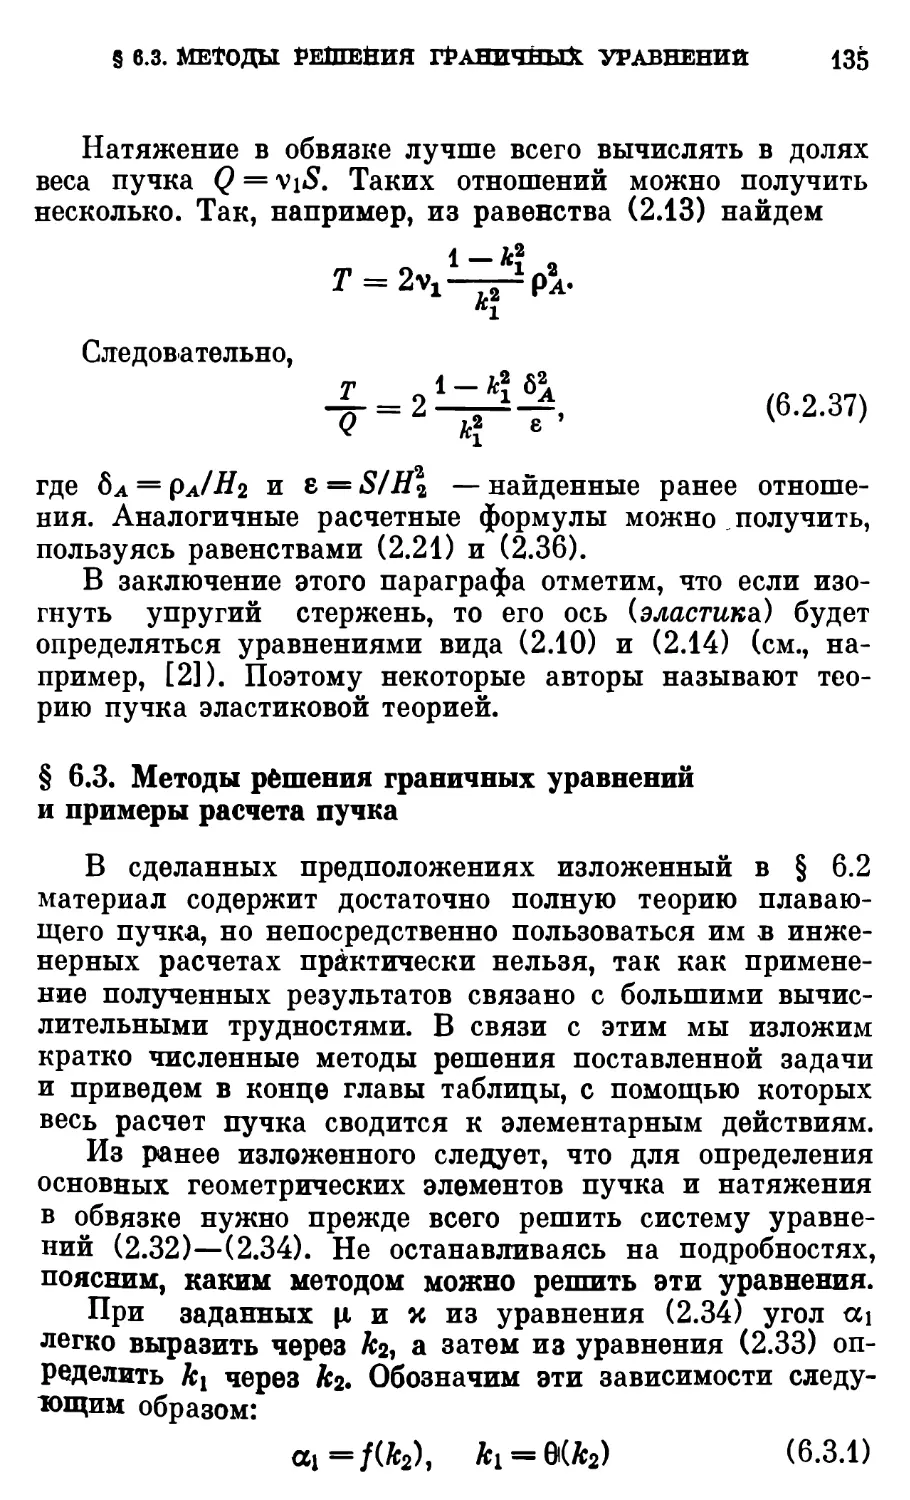 § 6.3. Методы решения граничных уравнений и примеры расчёта пучка